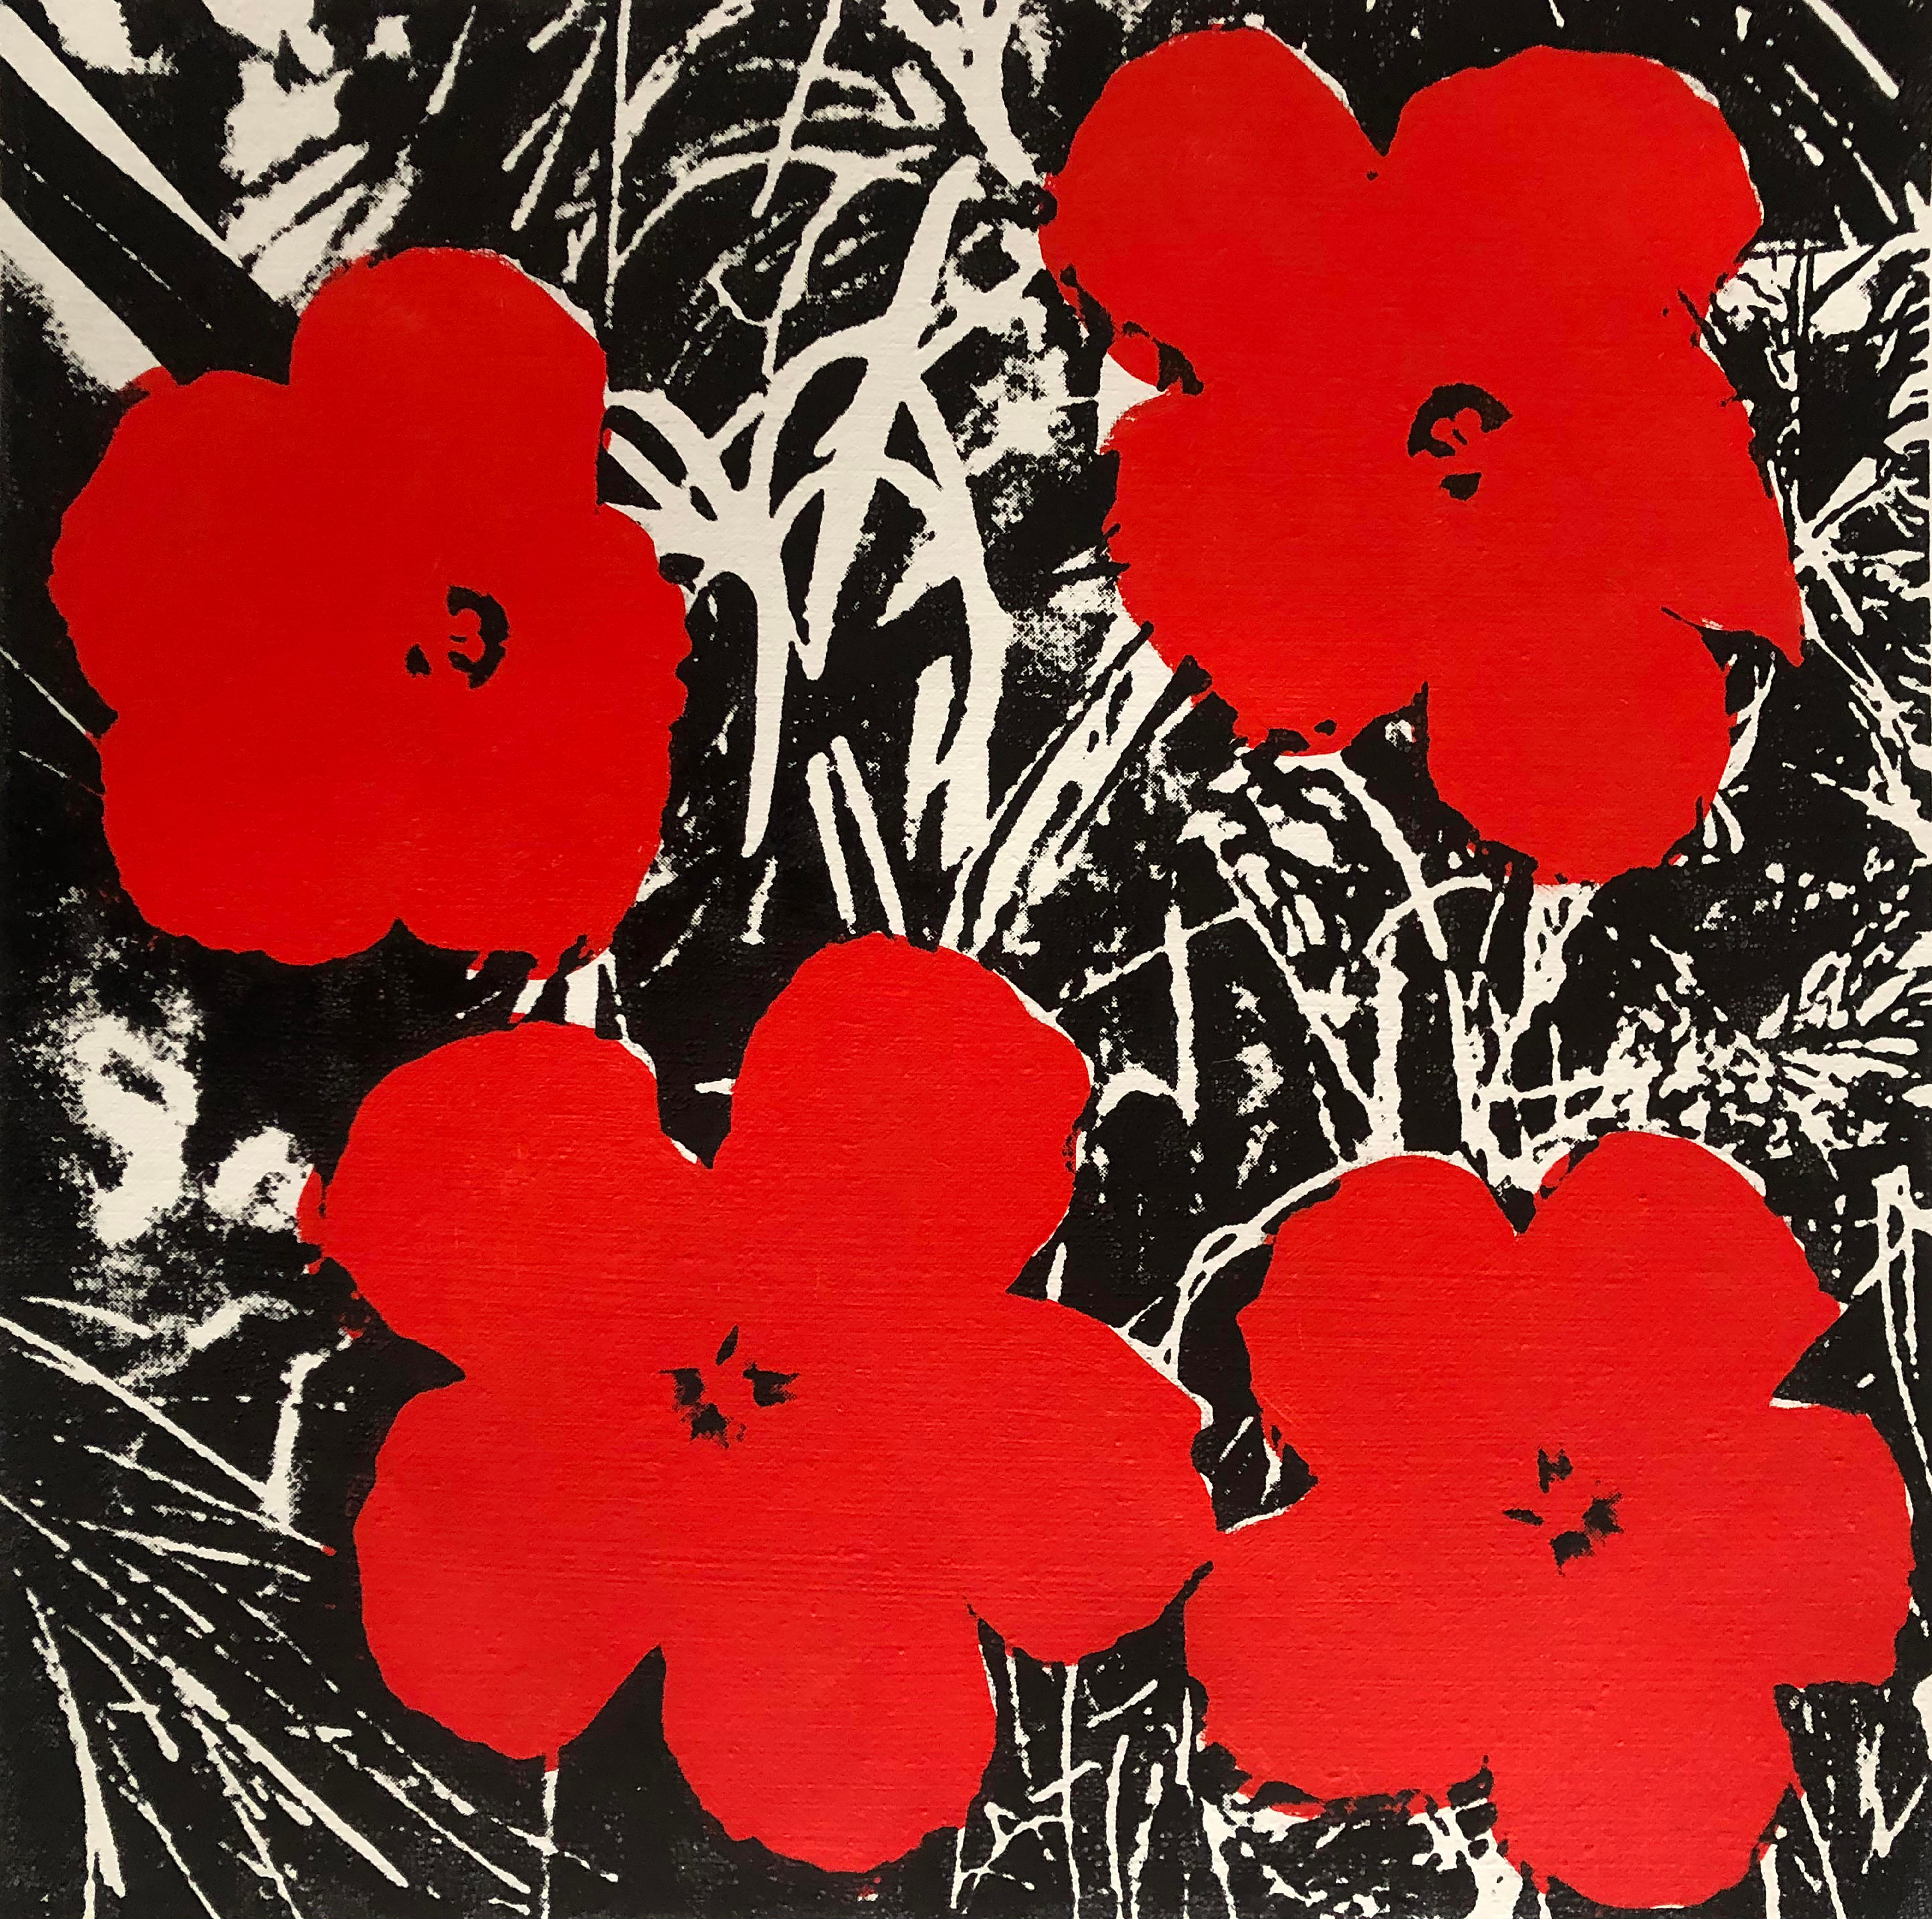 Verweigerte Warhol-Blumen, (Rot) Siebdruck Leinengemälde von Charles Lutz
Siebdruck und Acryl auf Leinen mit Verweigerungsstempel des Andy Warhol Art Authentication Board. 
14 x 14" Zoll 
2008

Lutz' Serie "Warhol Denied" aus dem Jahr 2007